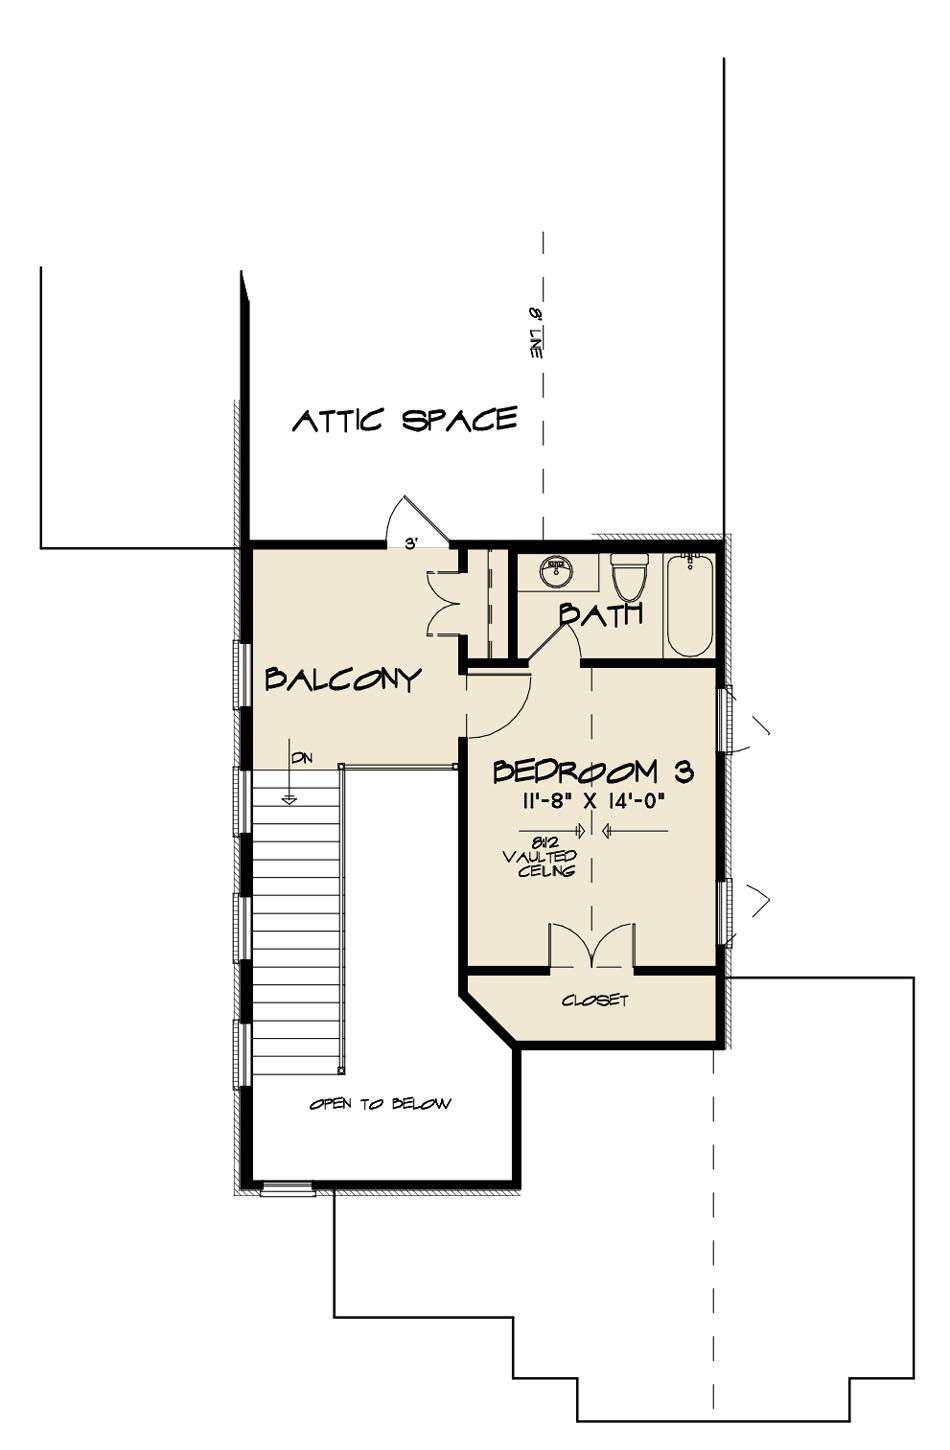 House Plan SMN 1028 Upper Floor